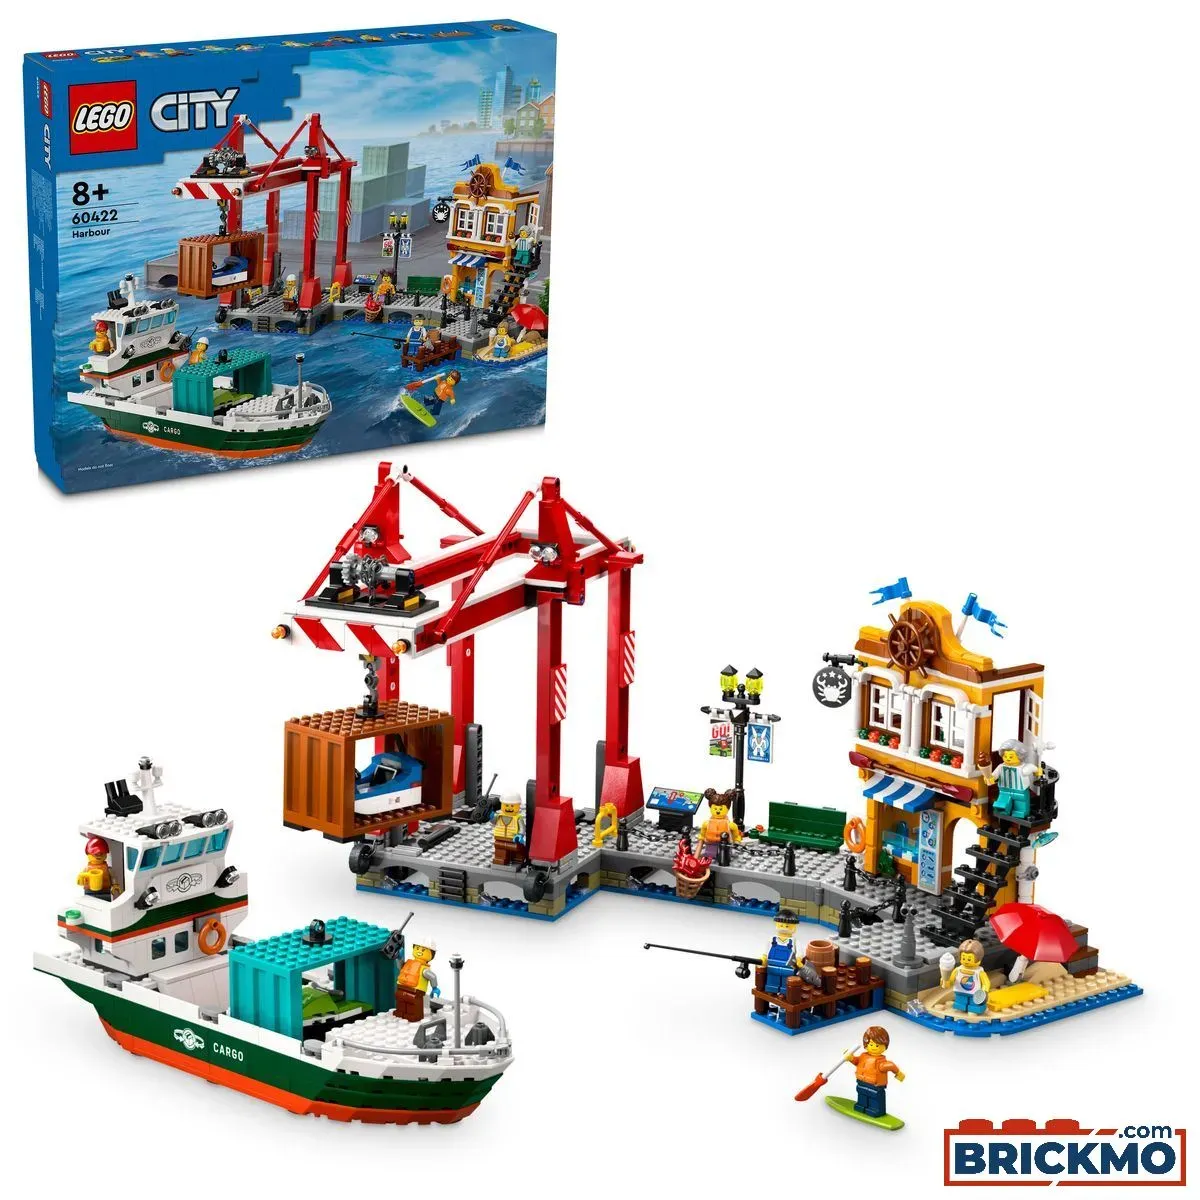 LEGO City 60422 Hafen mit Frachtschiff 60422